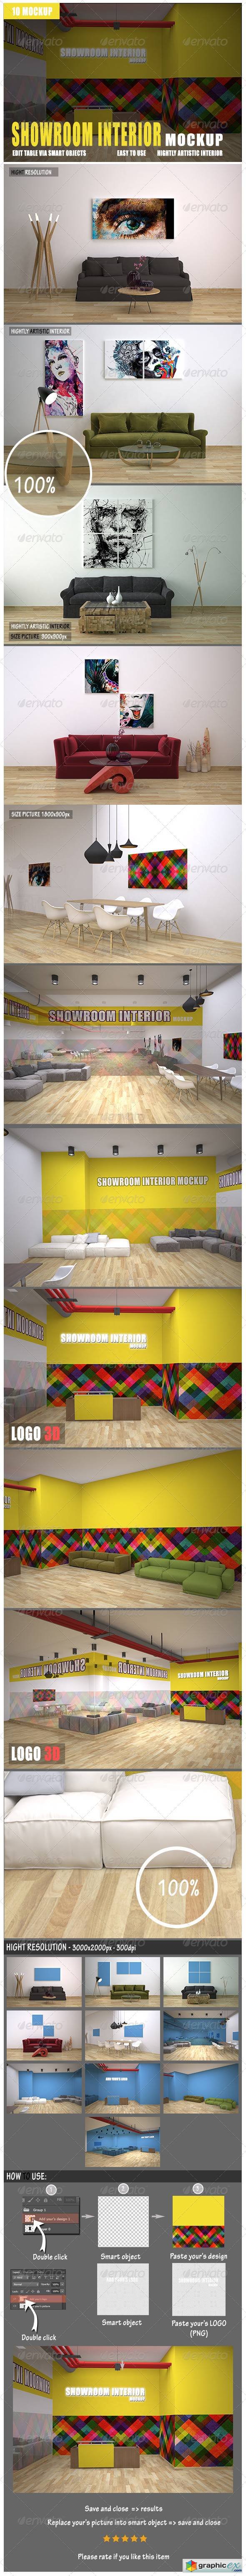 Showroom Interior Mockup